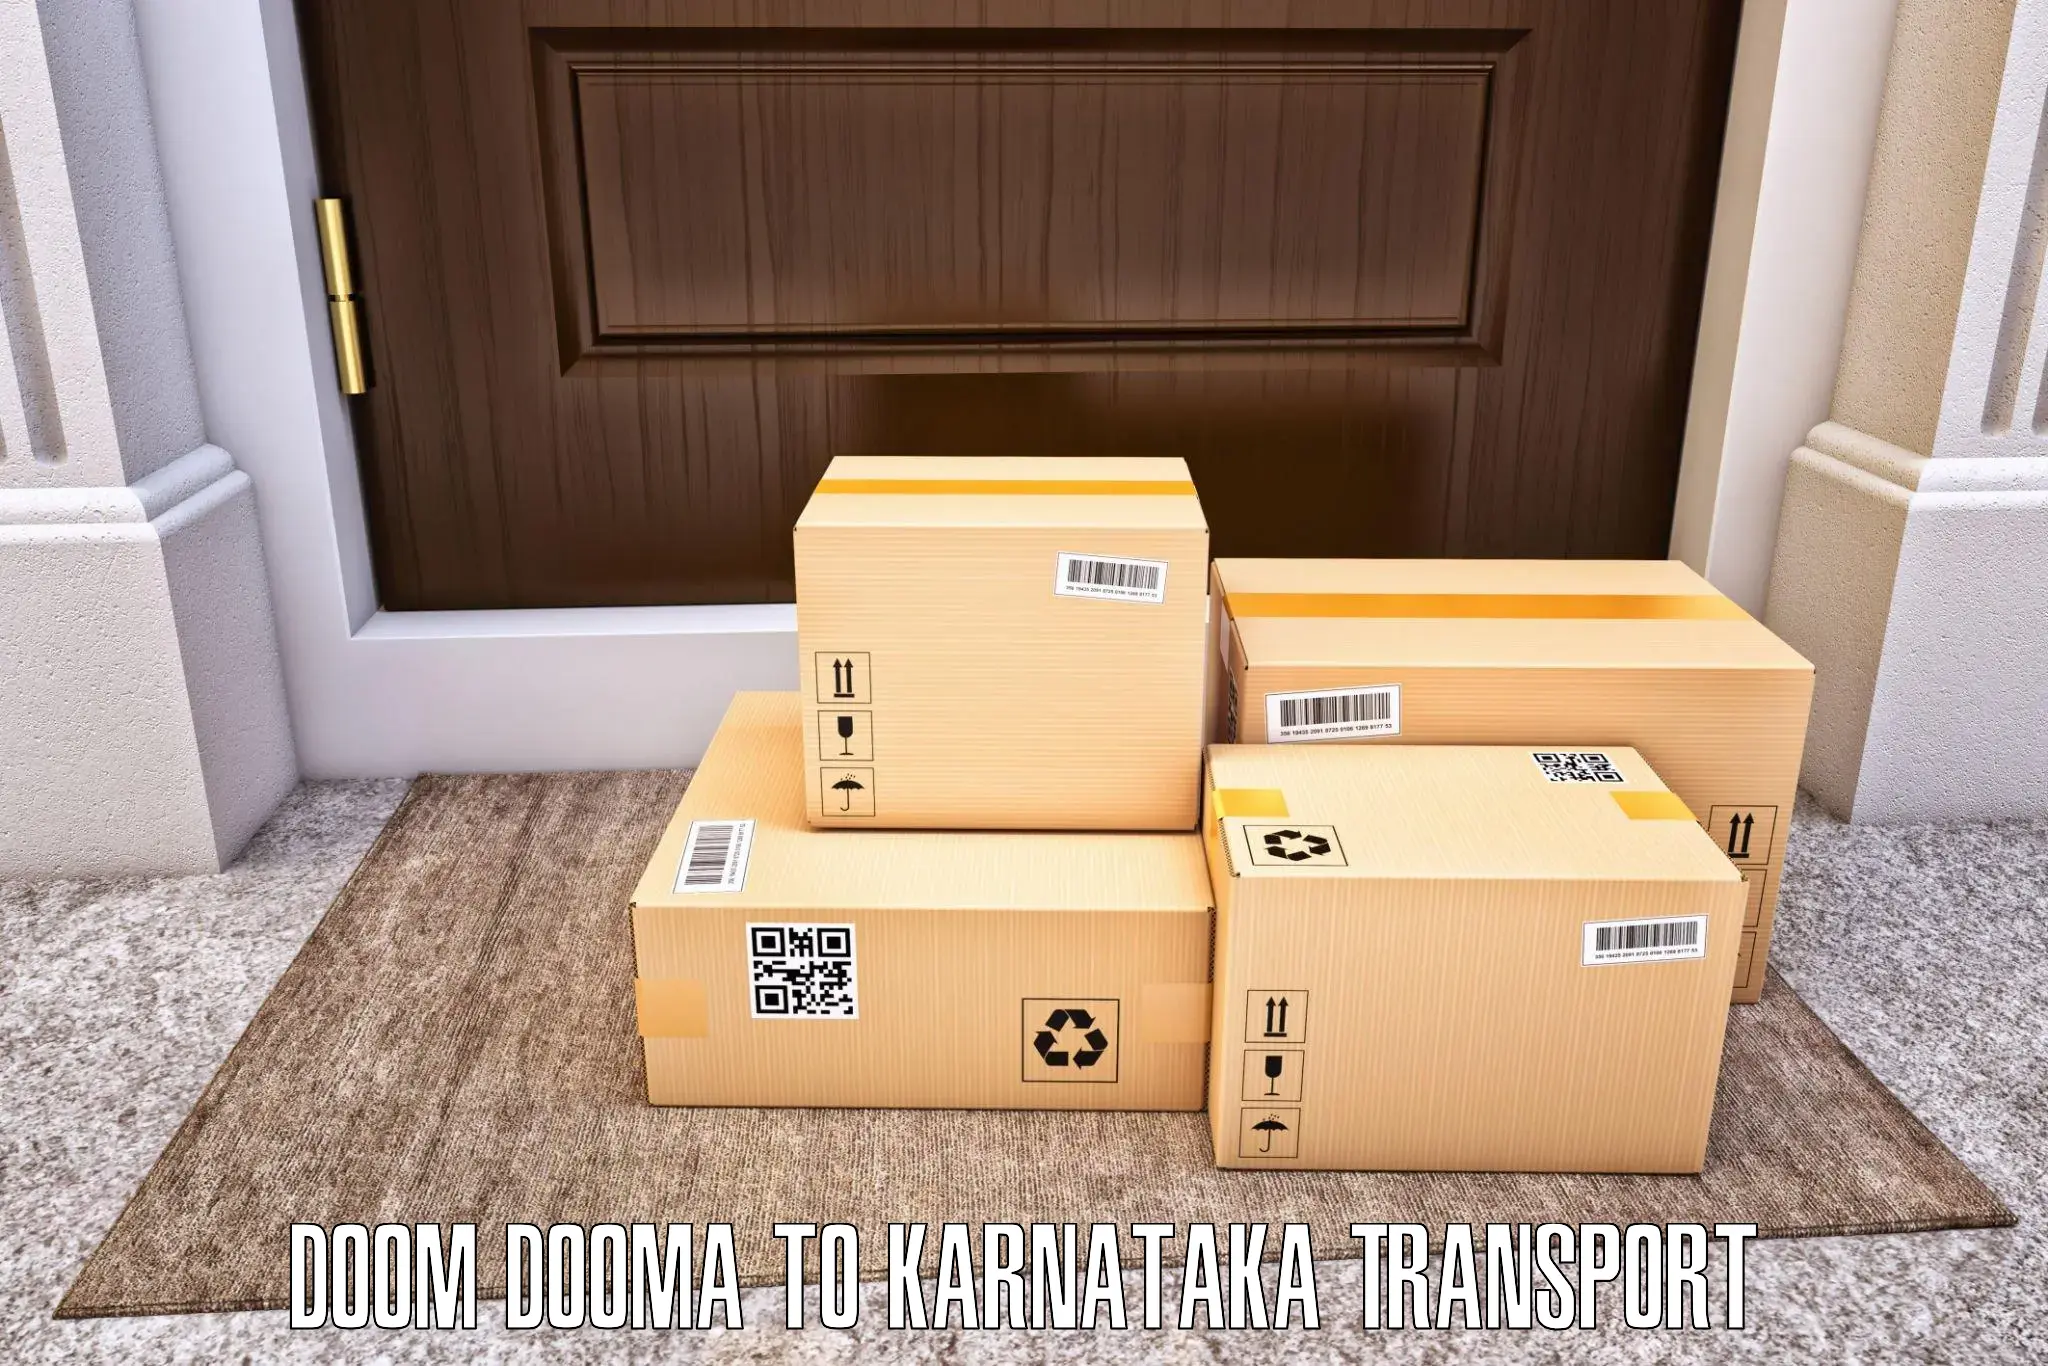 International cargo transportation services in Doom Dooma to Chitradurga